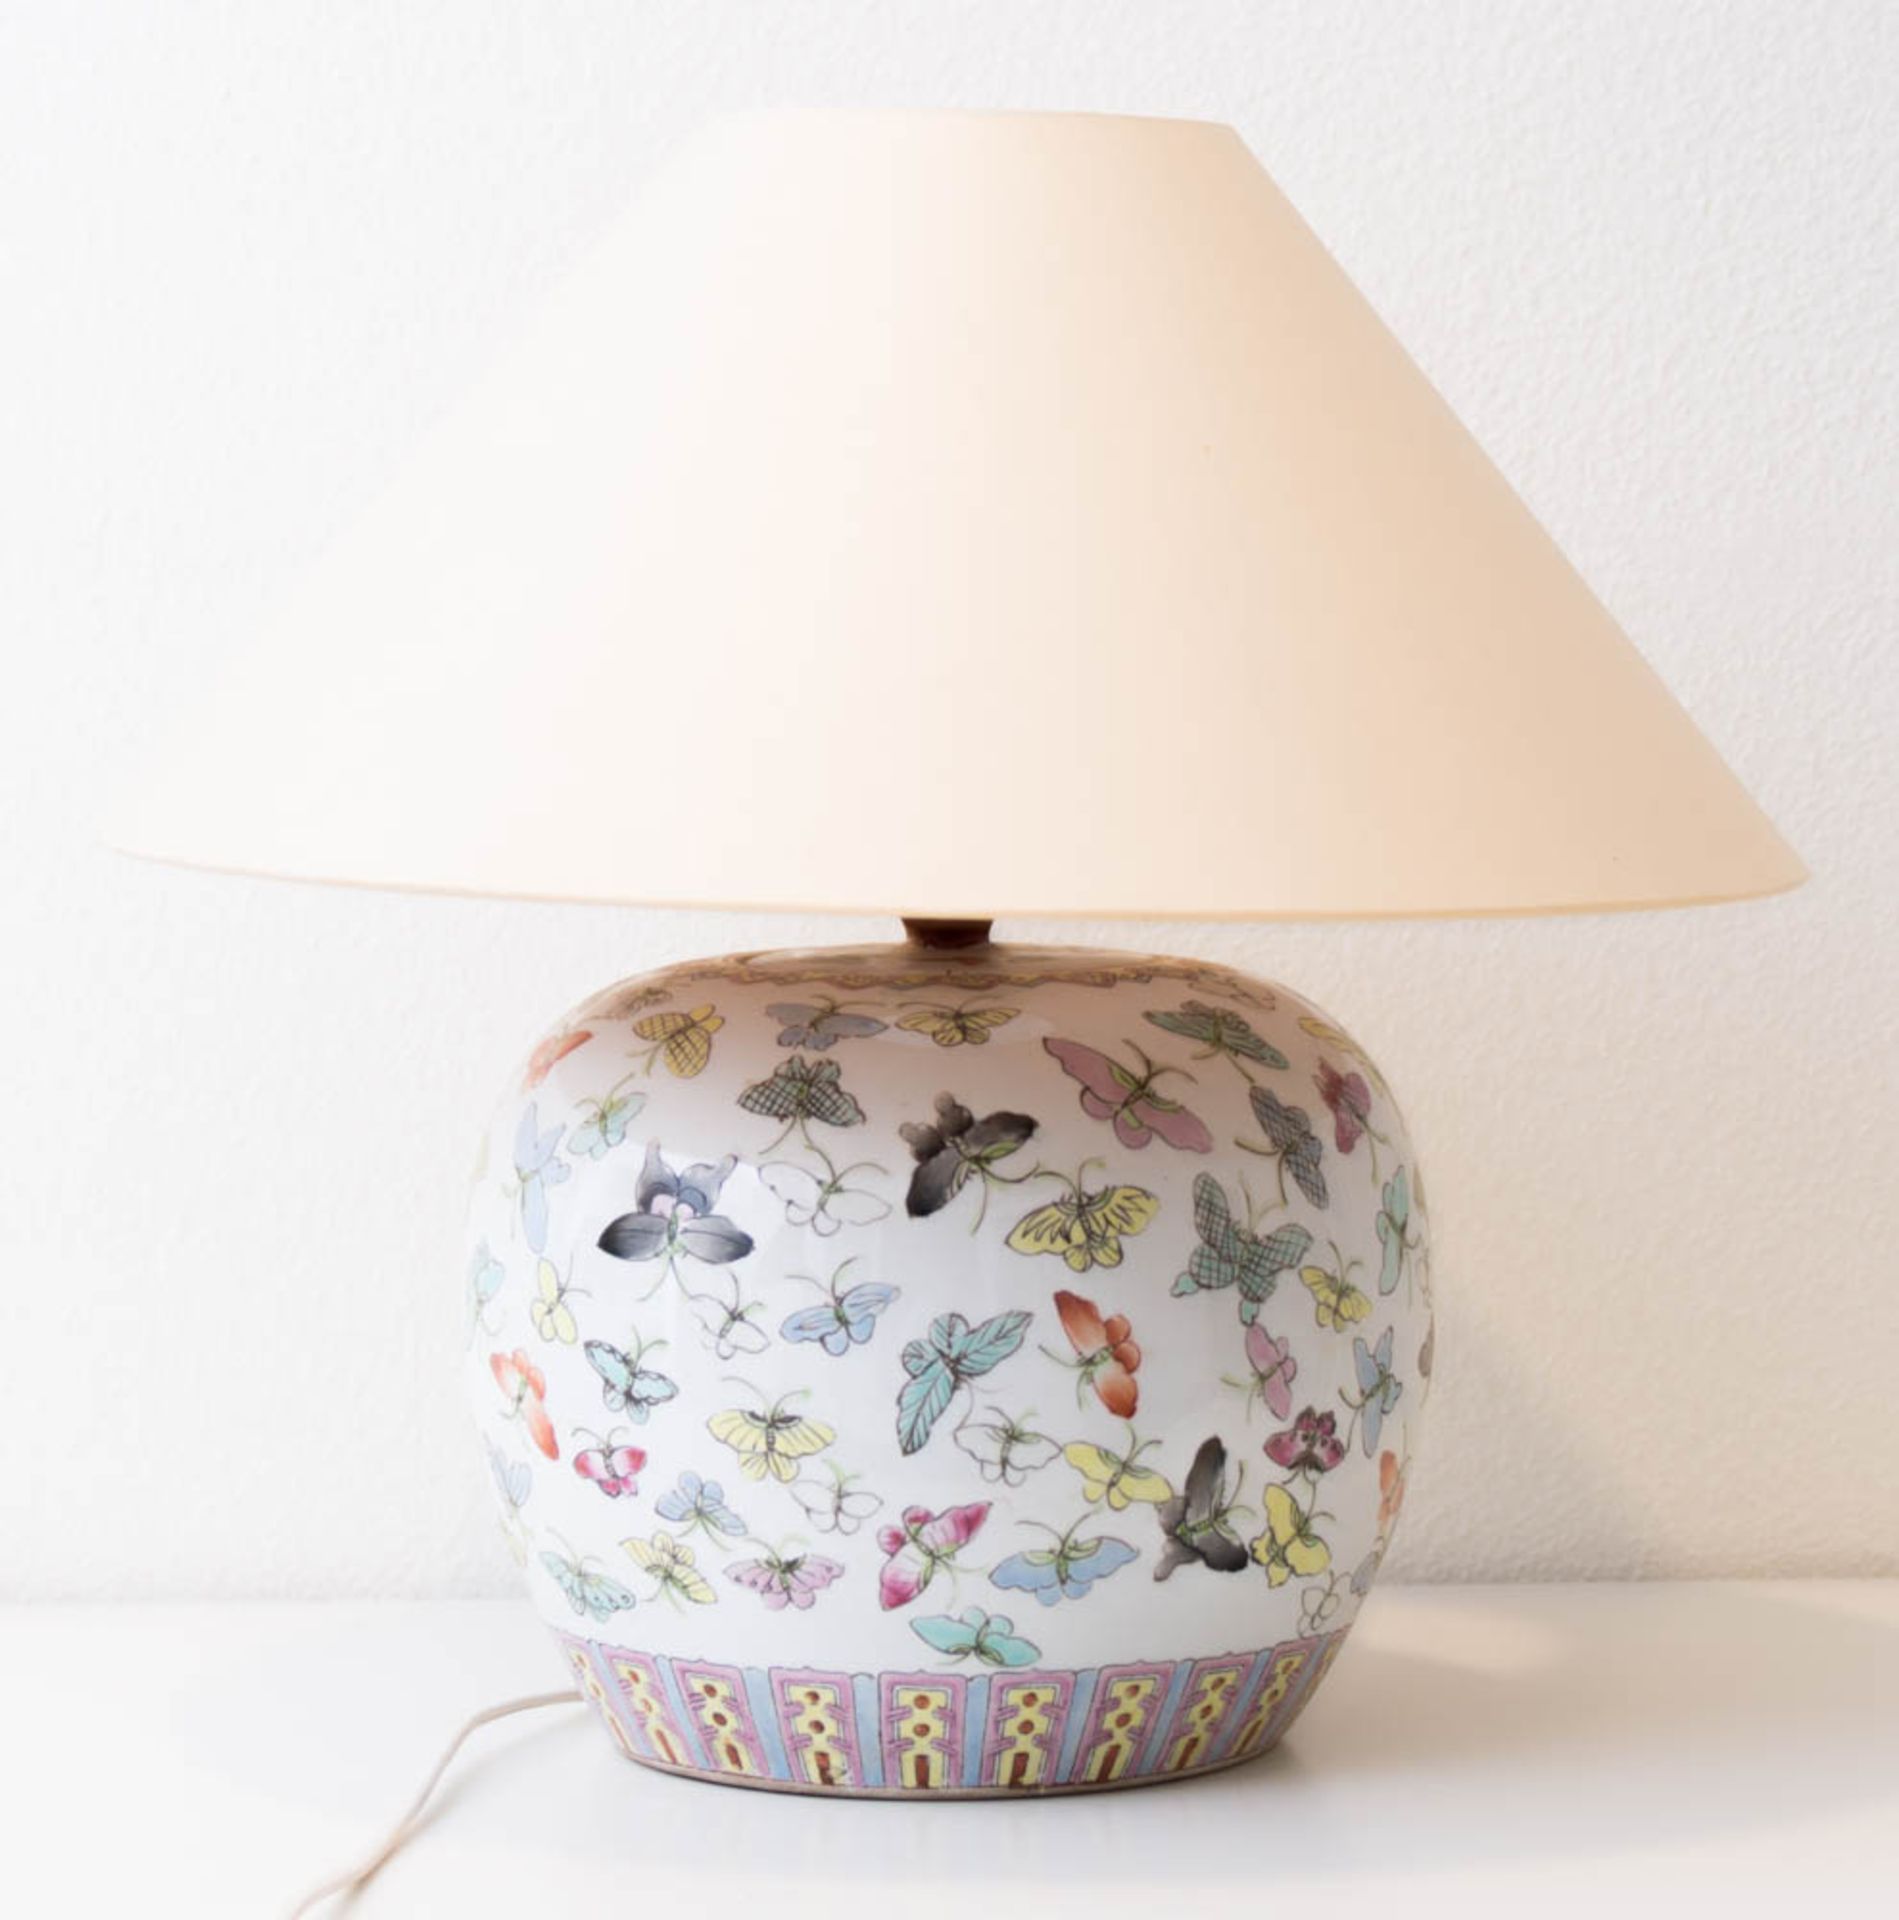 Tischlampe aus Porzellan mit Schmetterlingsdekor.